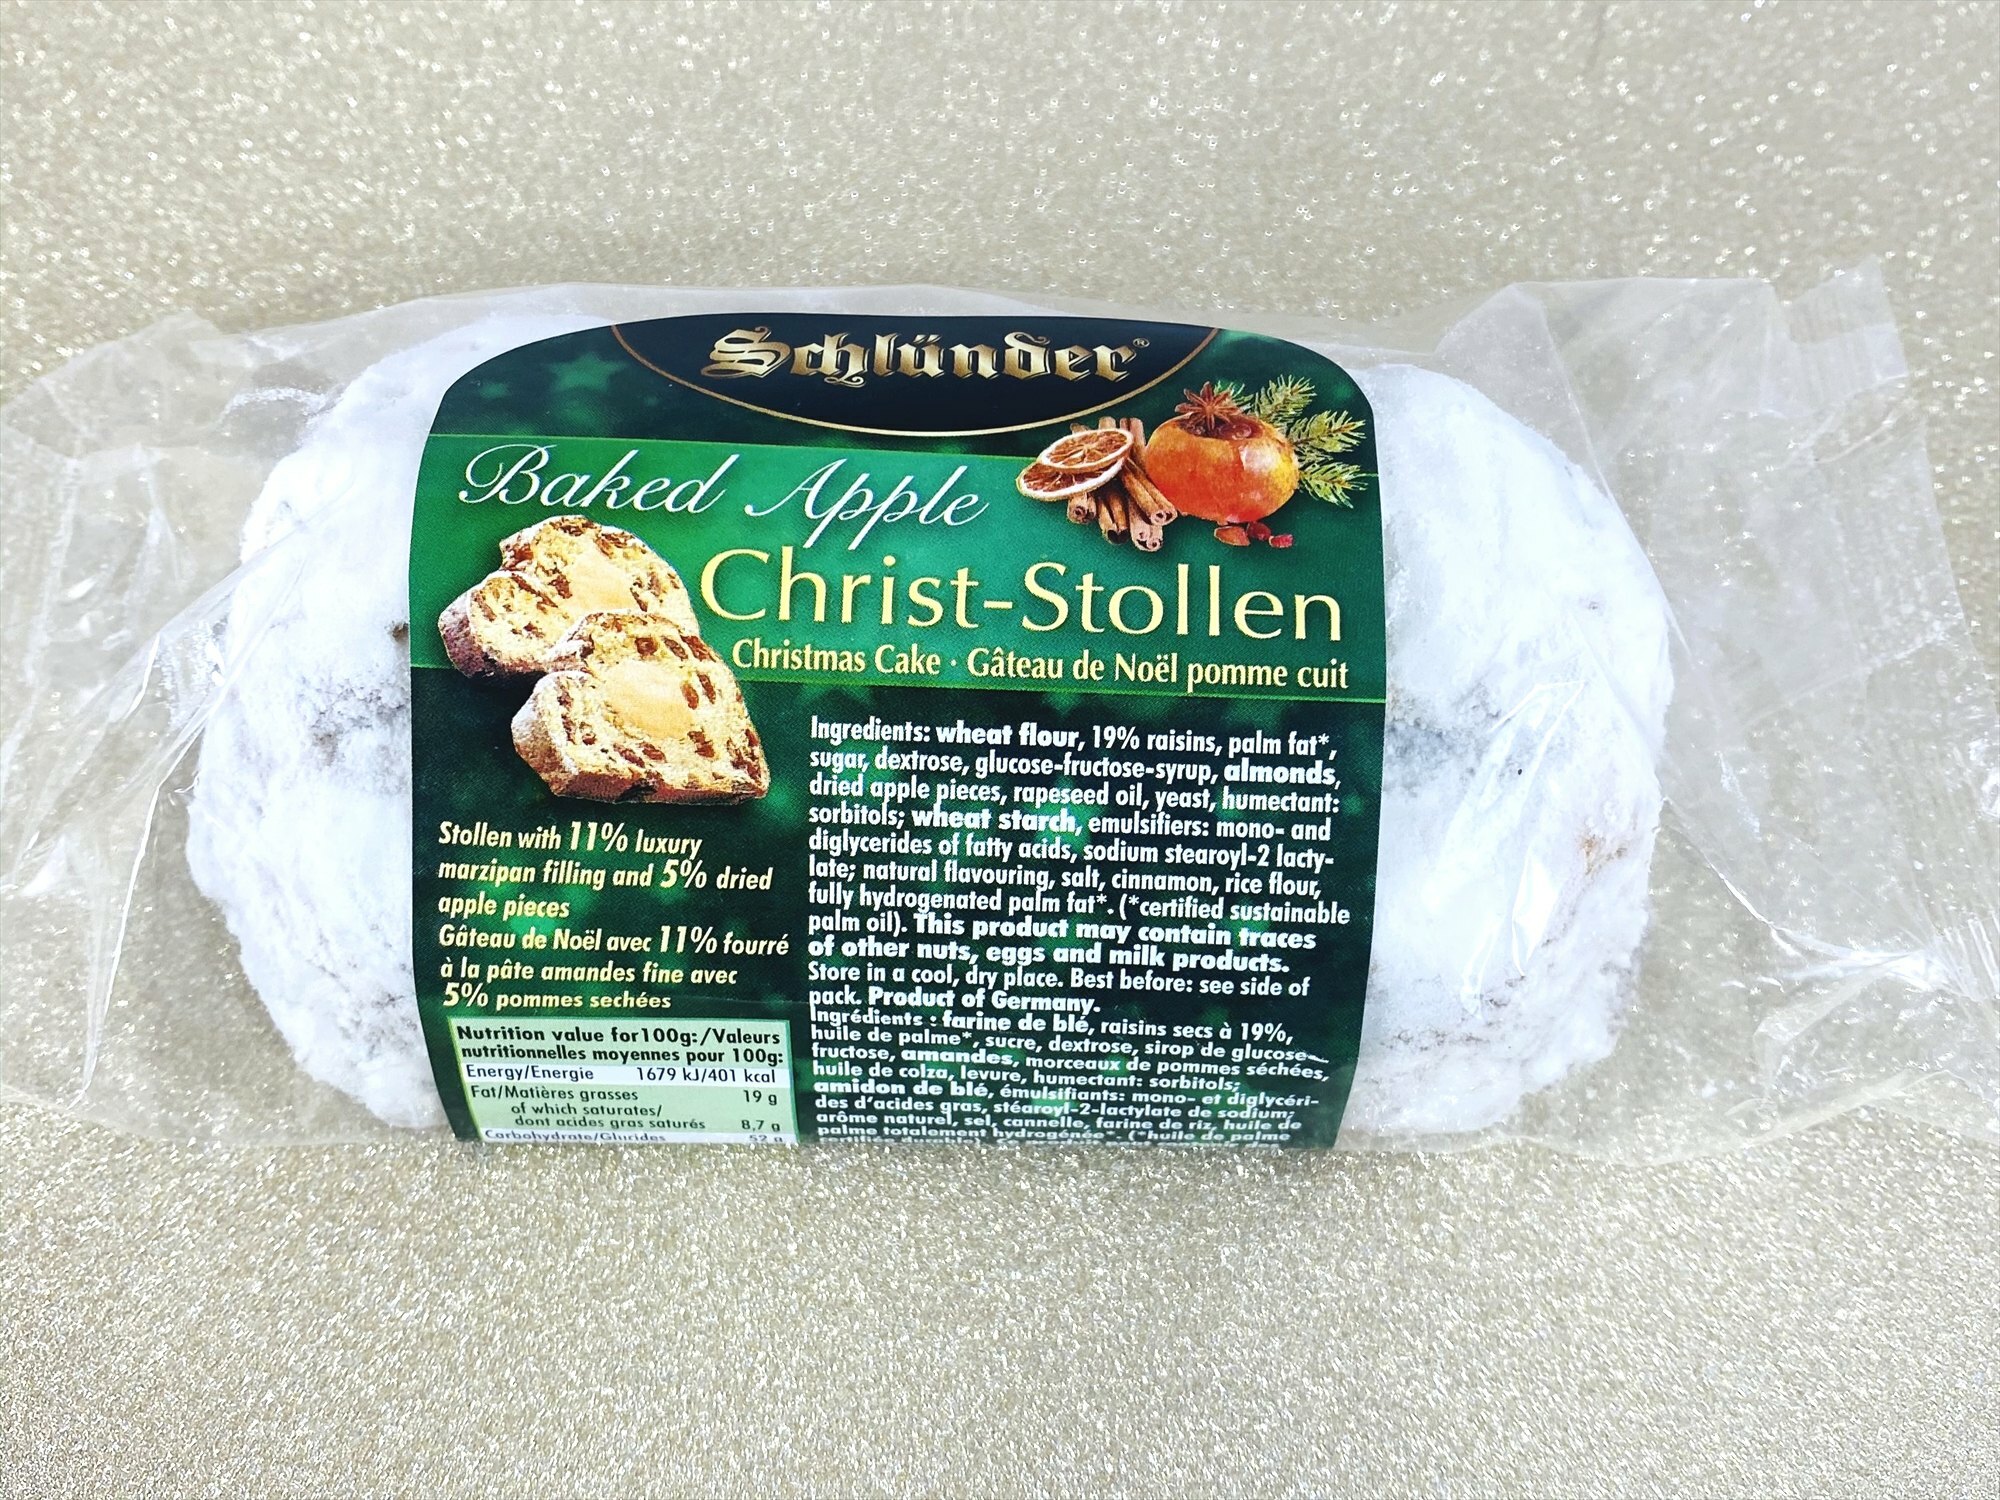 Schlünder Baked Apple Christ-Stollen Christmas Cake.